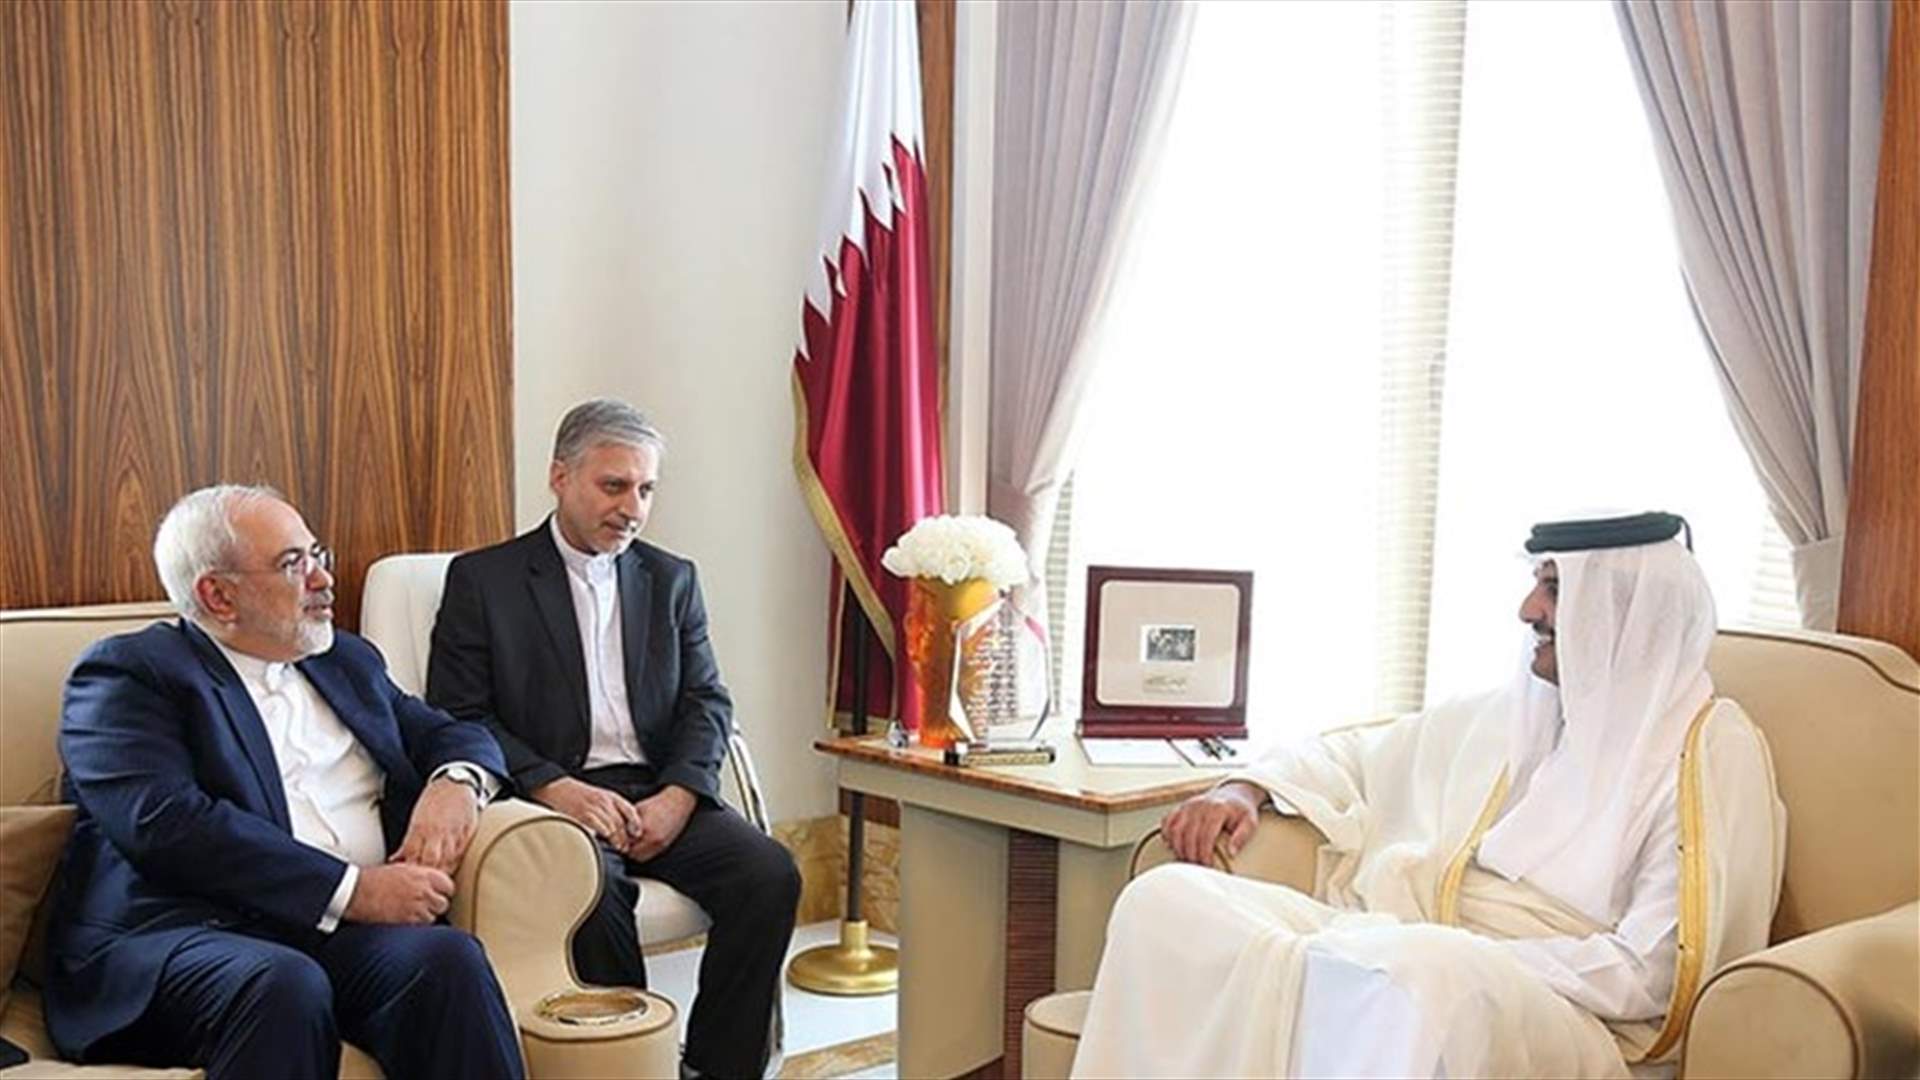 ظريف بحث مع أمير قطر المستجدات الإقليمية